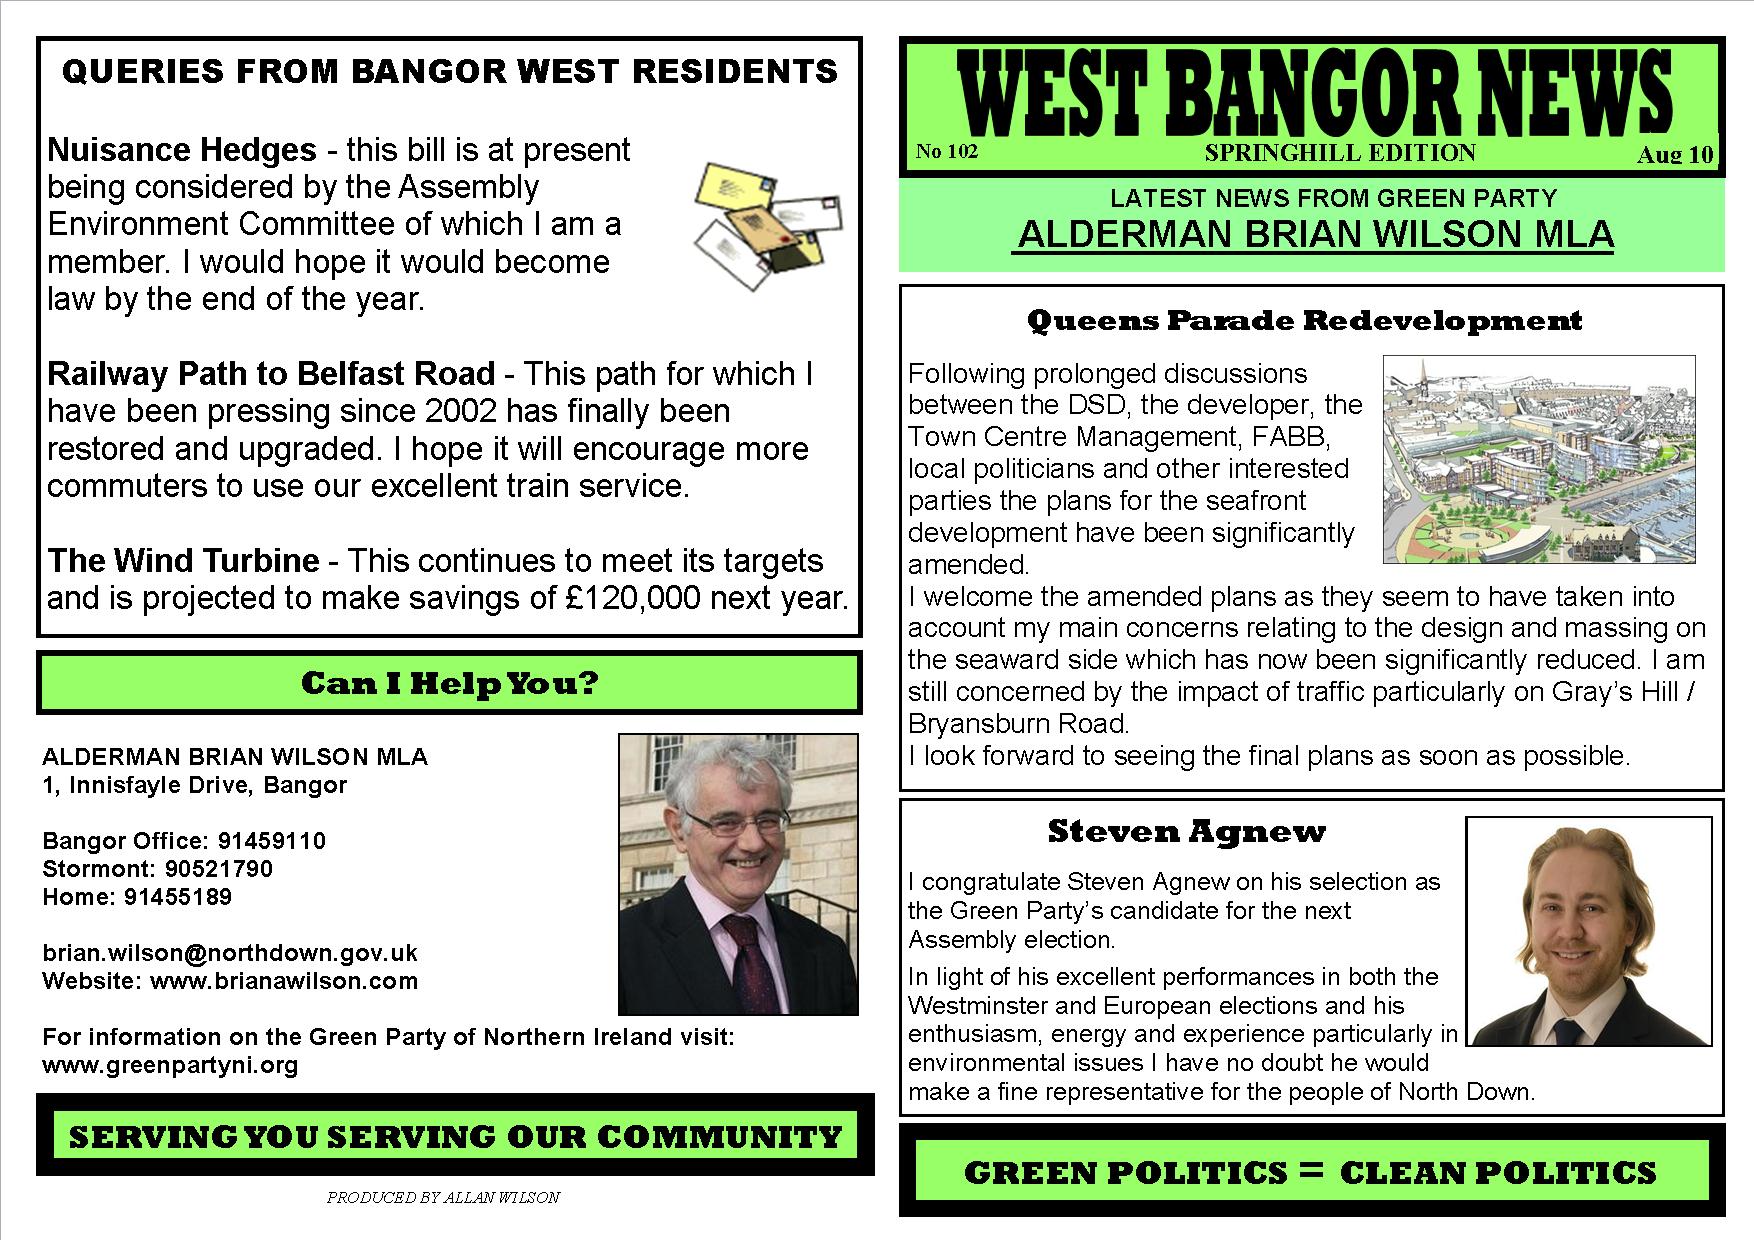 West Bangor News (102) – Summer 2010